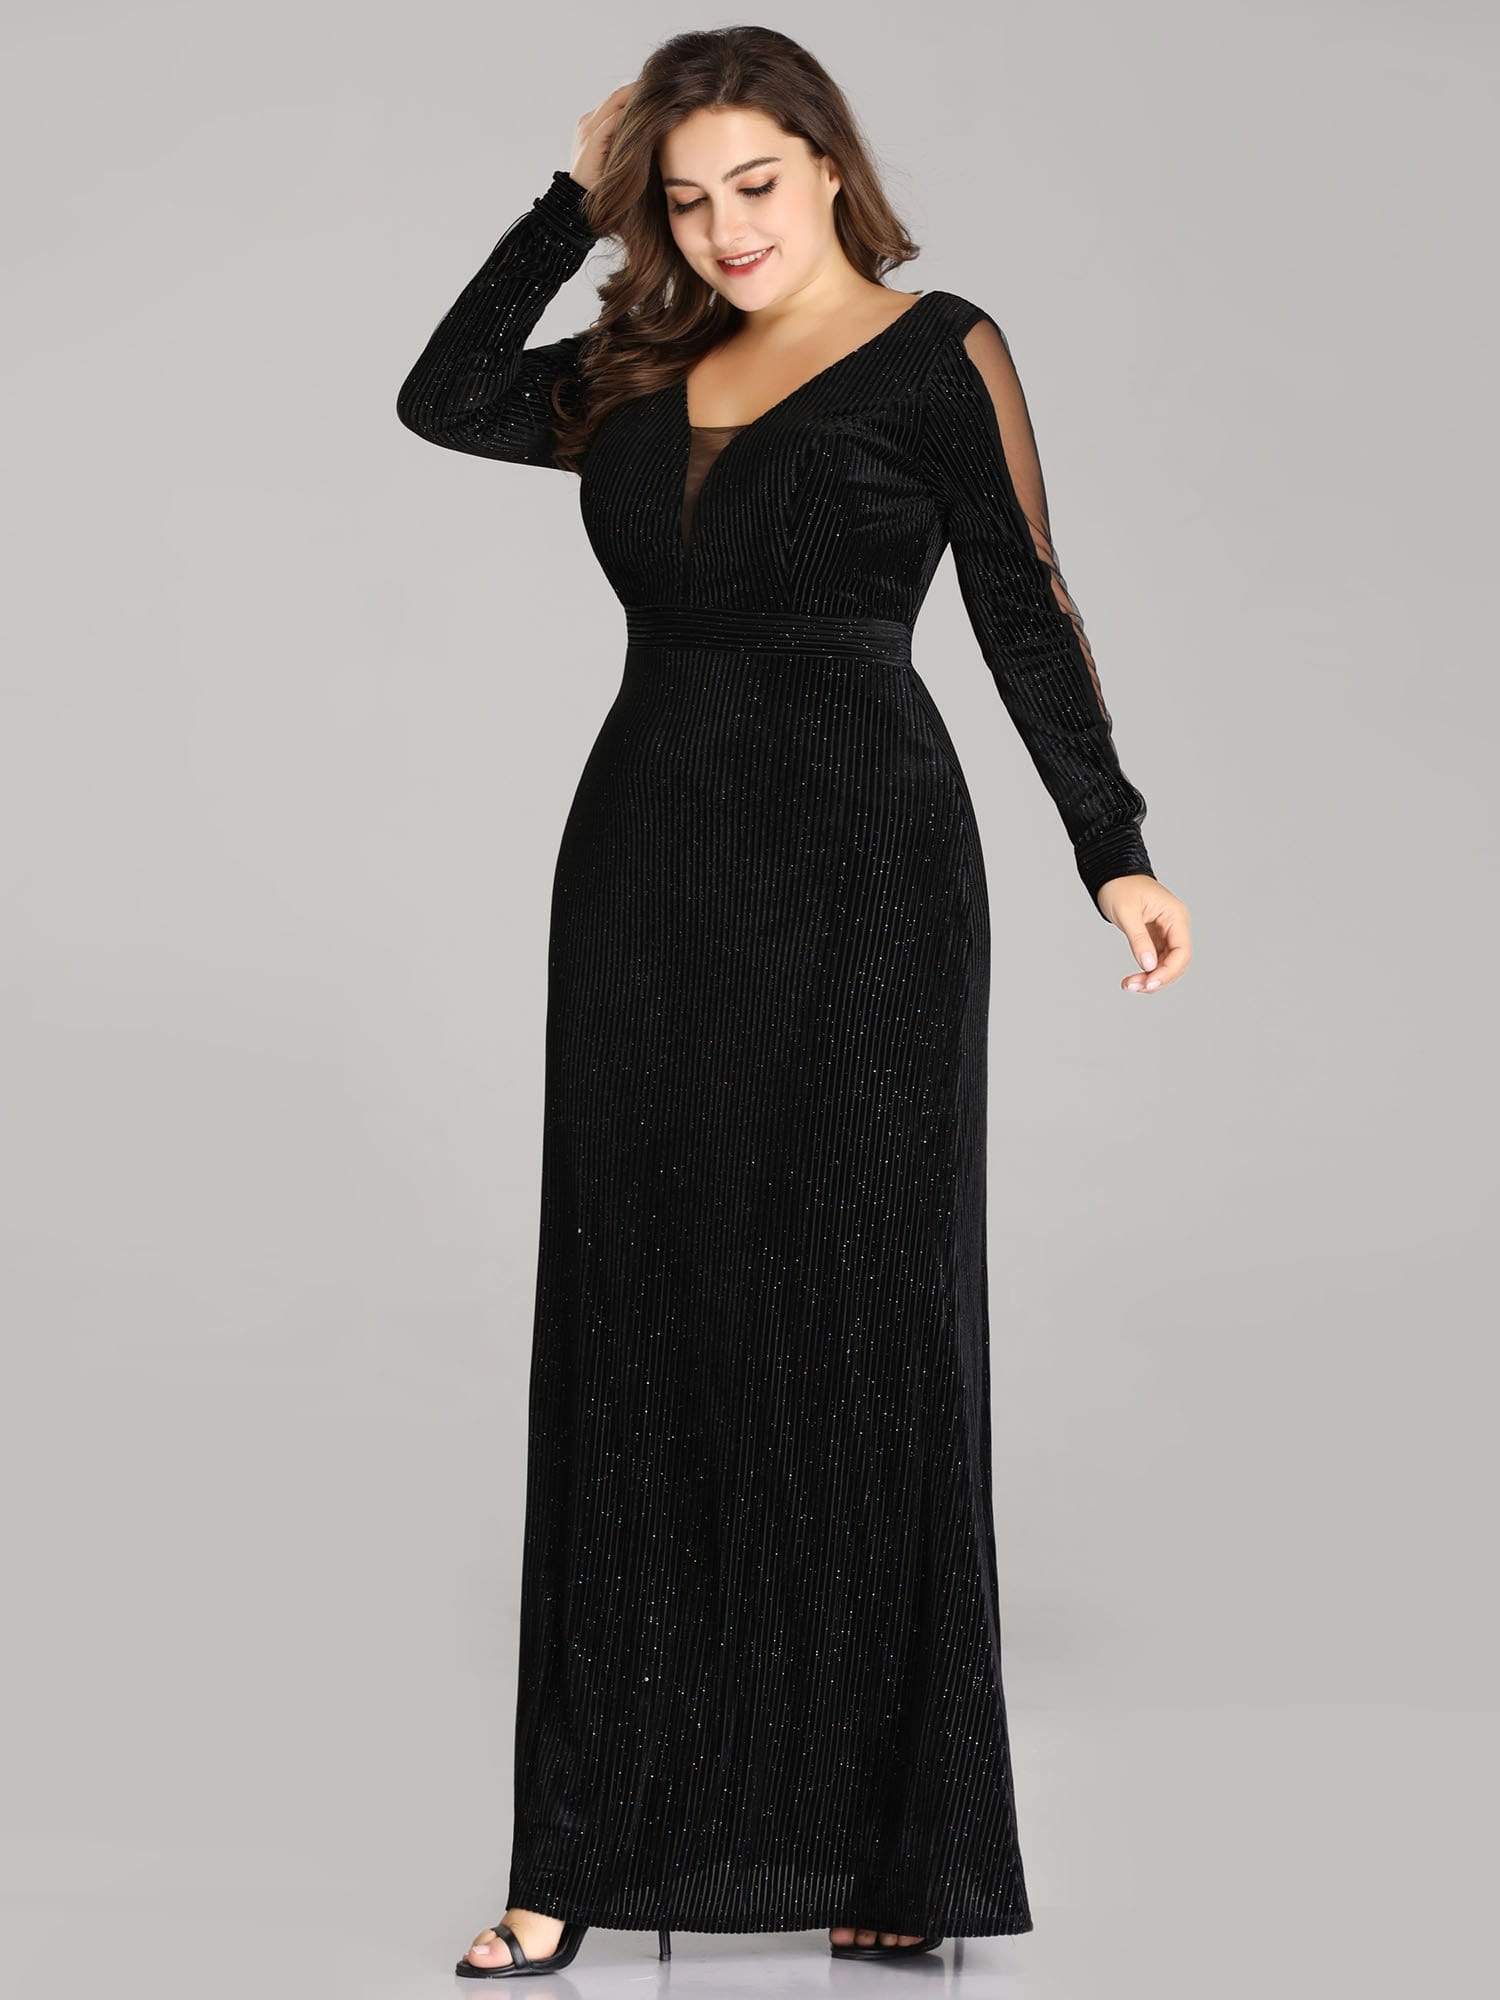 COLOR=Black | Elegant Long-Sleeve V Neck Glitter Formal Evening Dress-Black 3